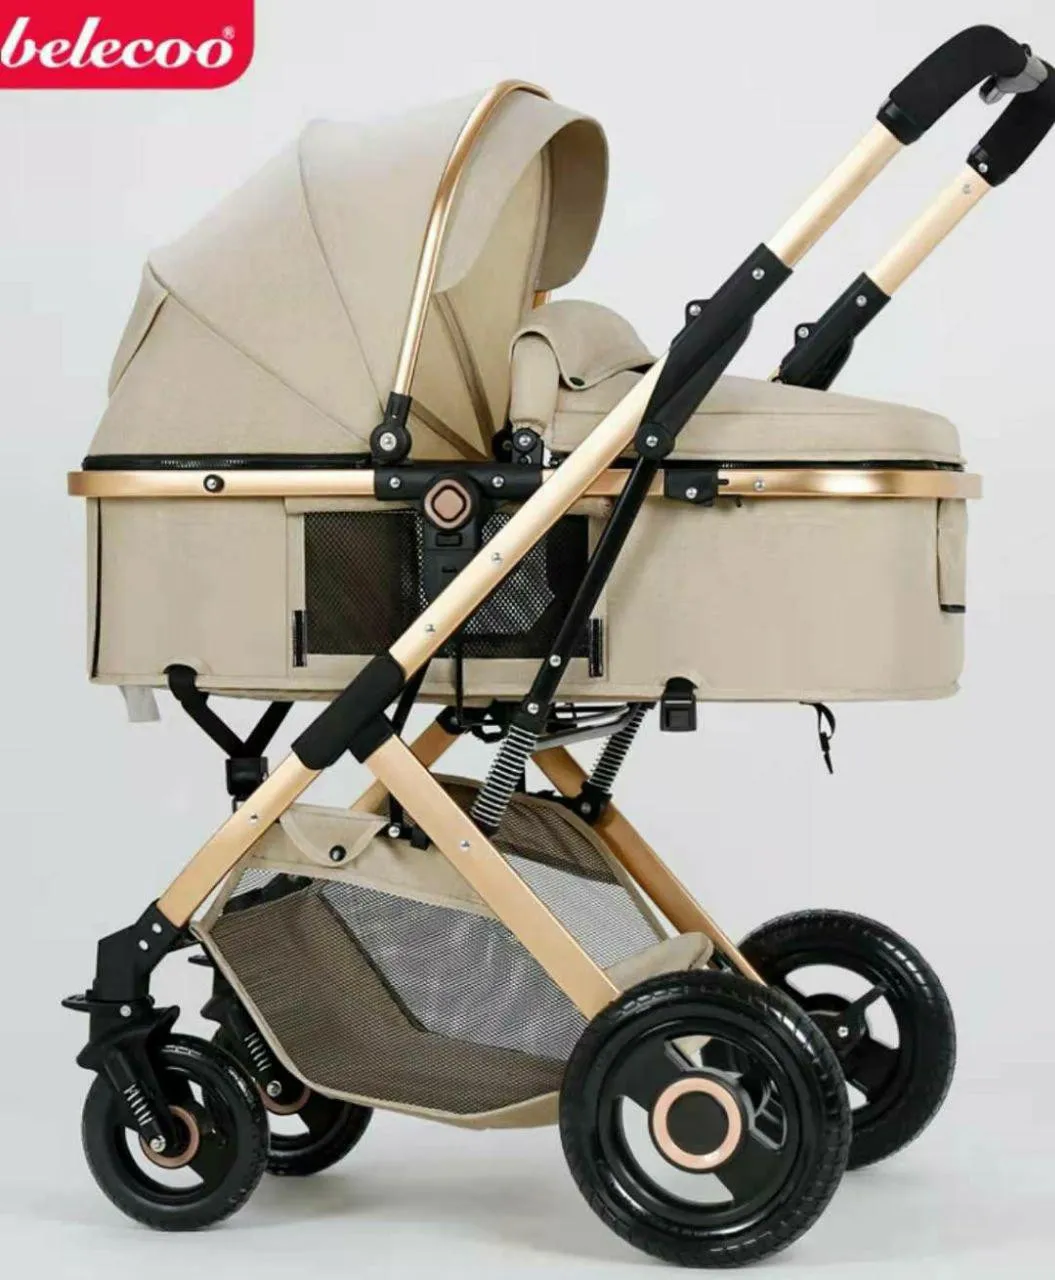 Детская коляска Belecoo HA321 (цвет черный)#1